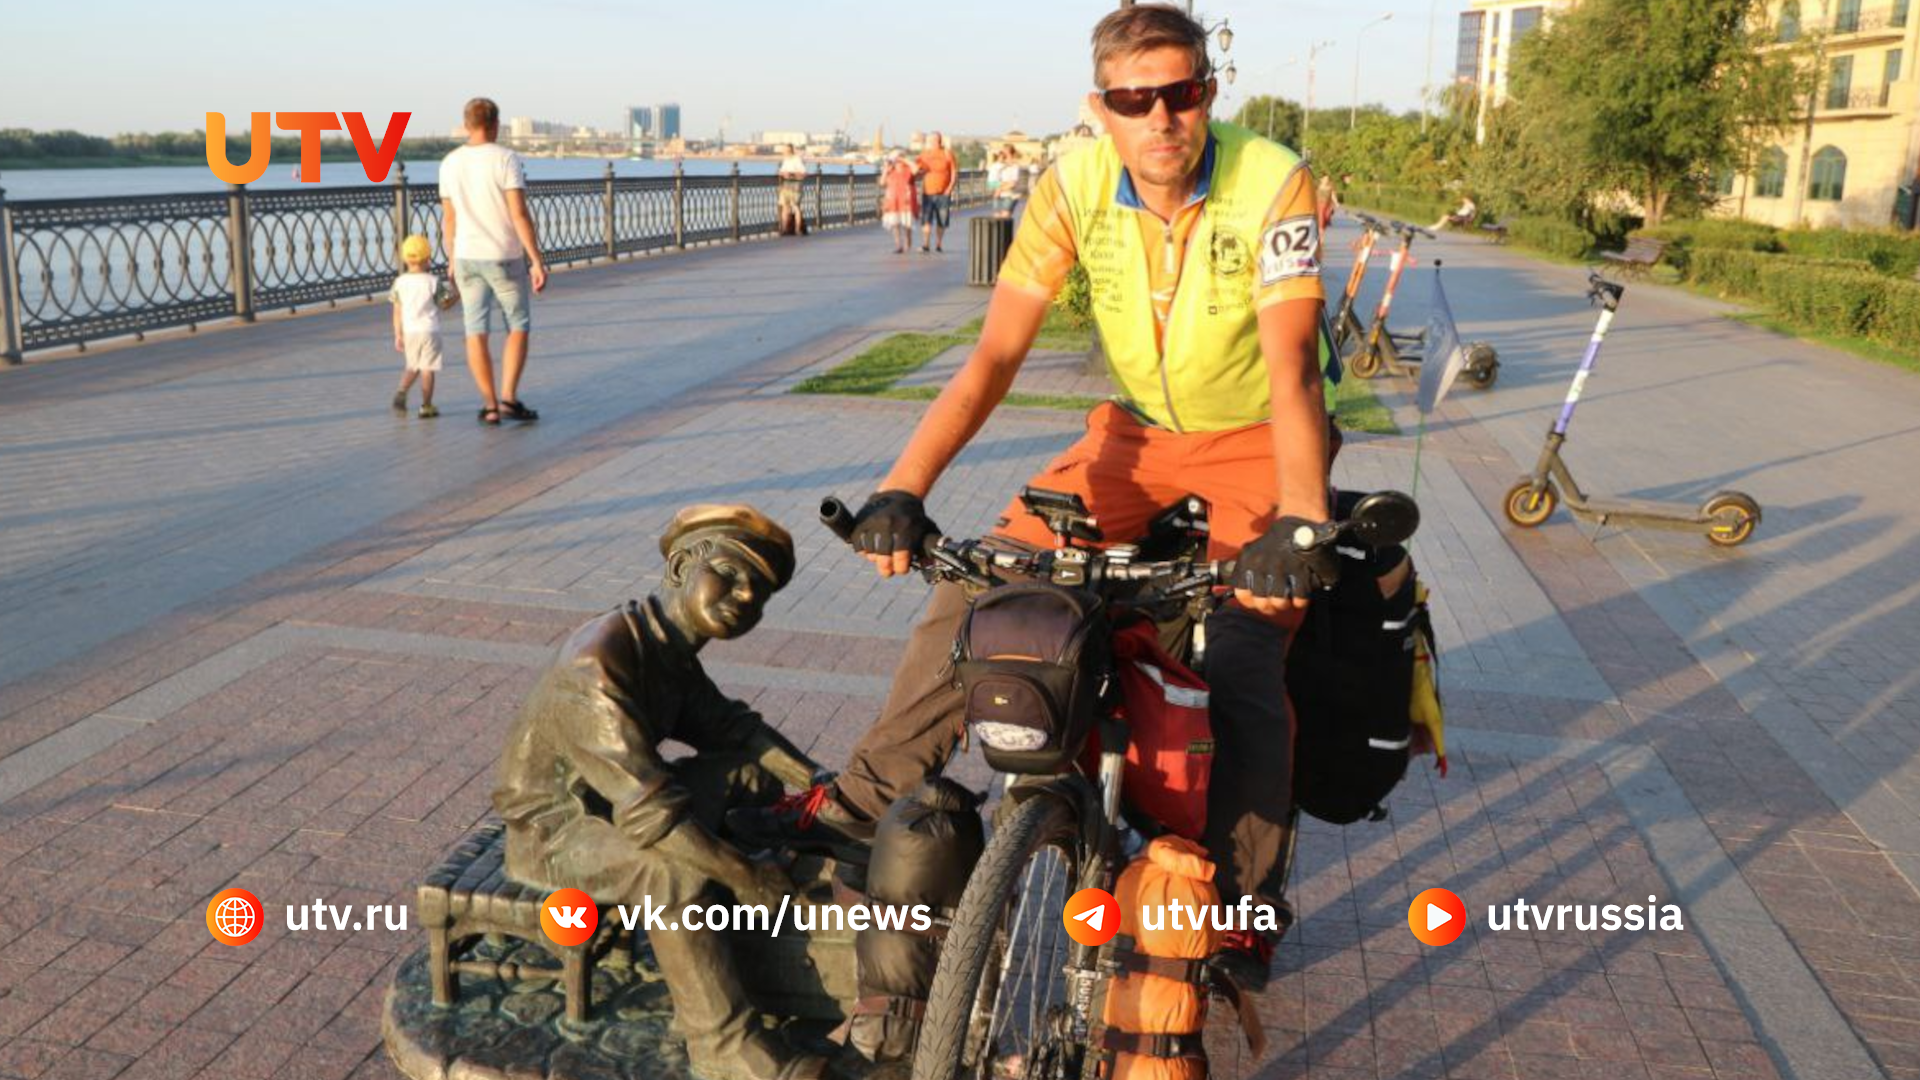 Уфимец отправится в 25-дневное велопутешествие из столицы Башкирии в Соловецкие острова